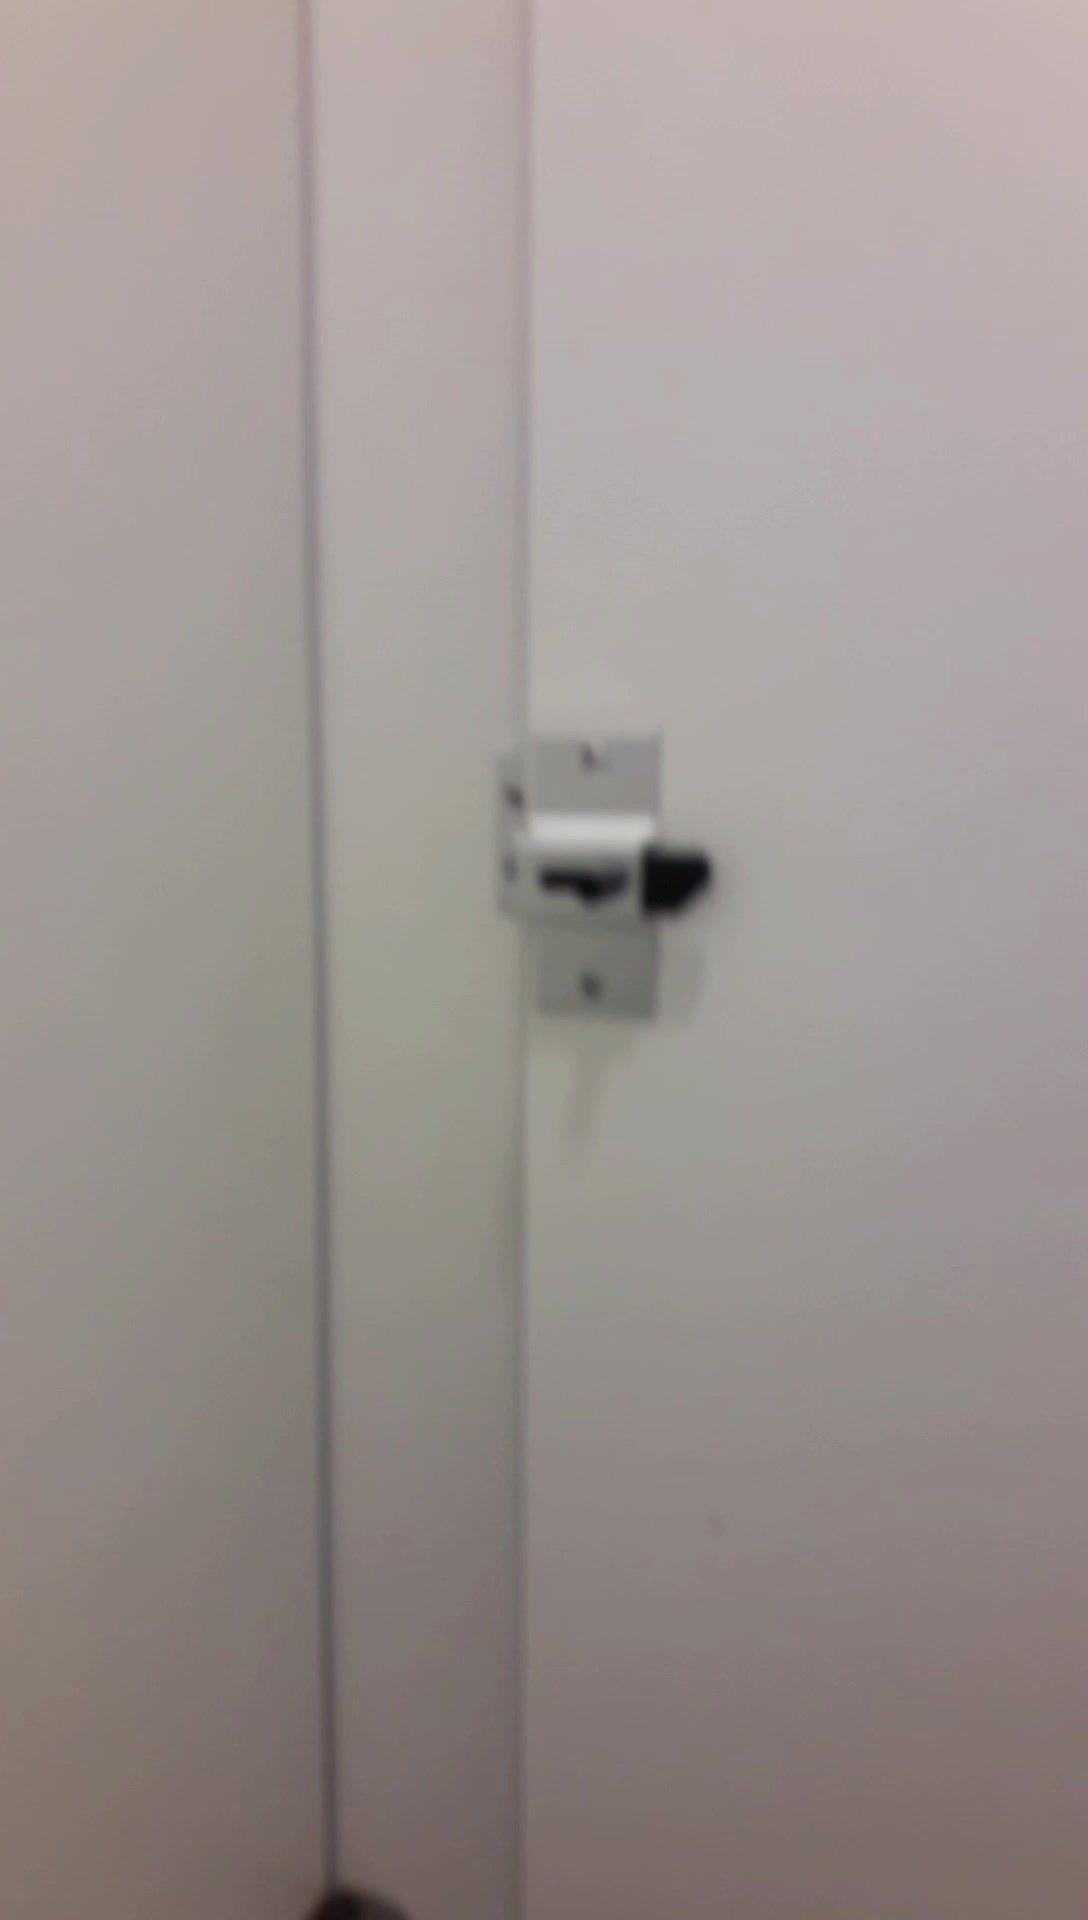 Strangers Opened The Public Toilet Door - video 15